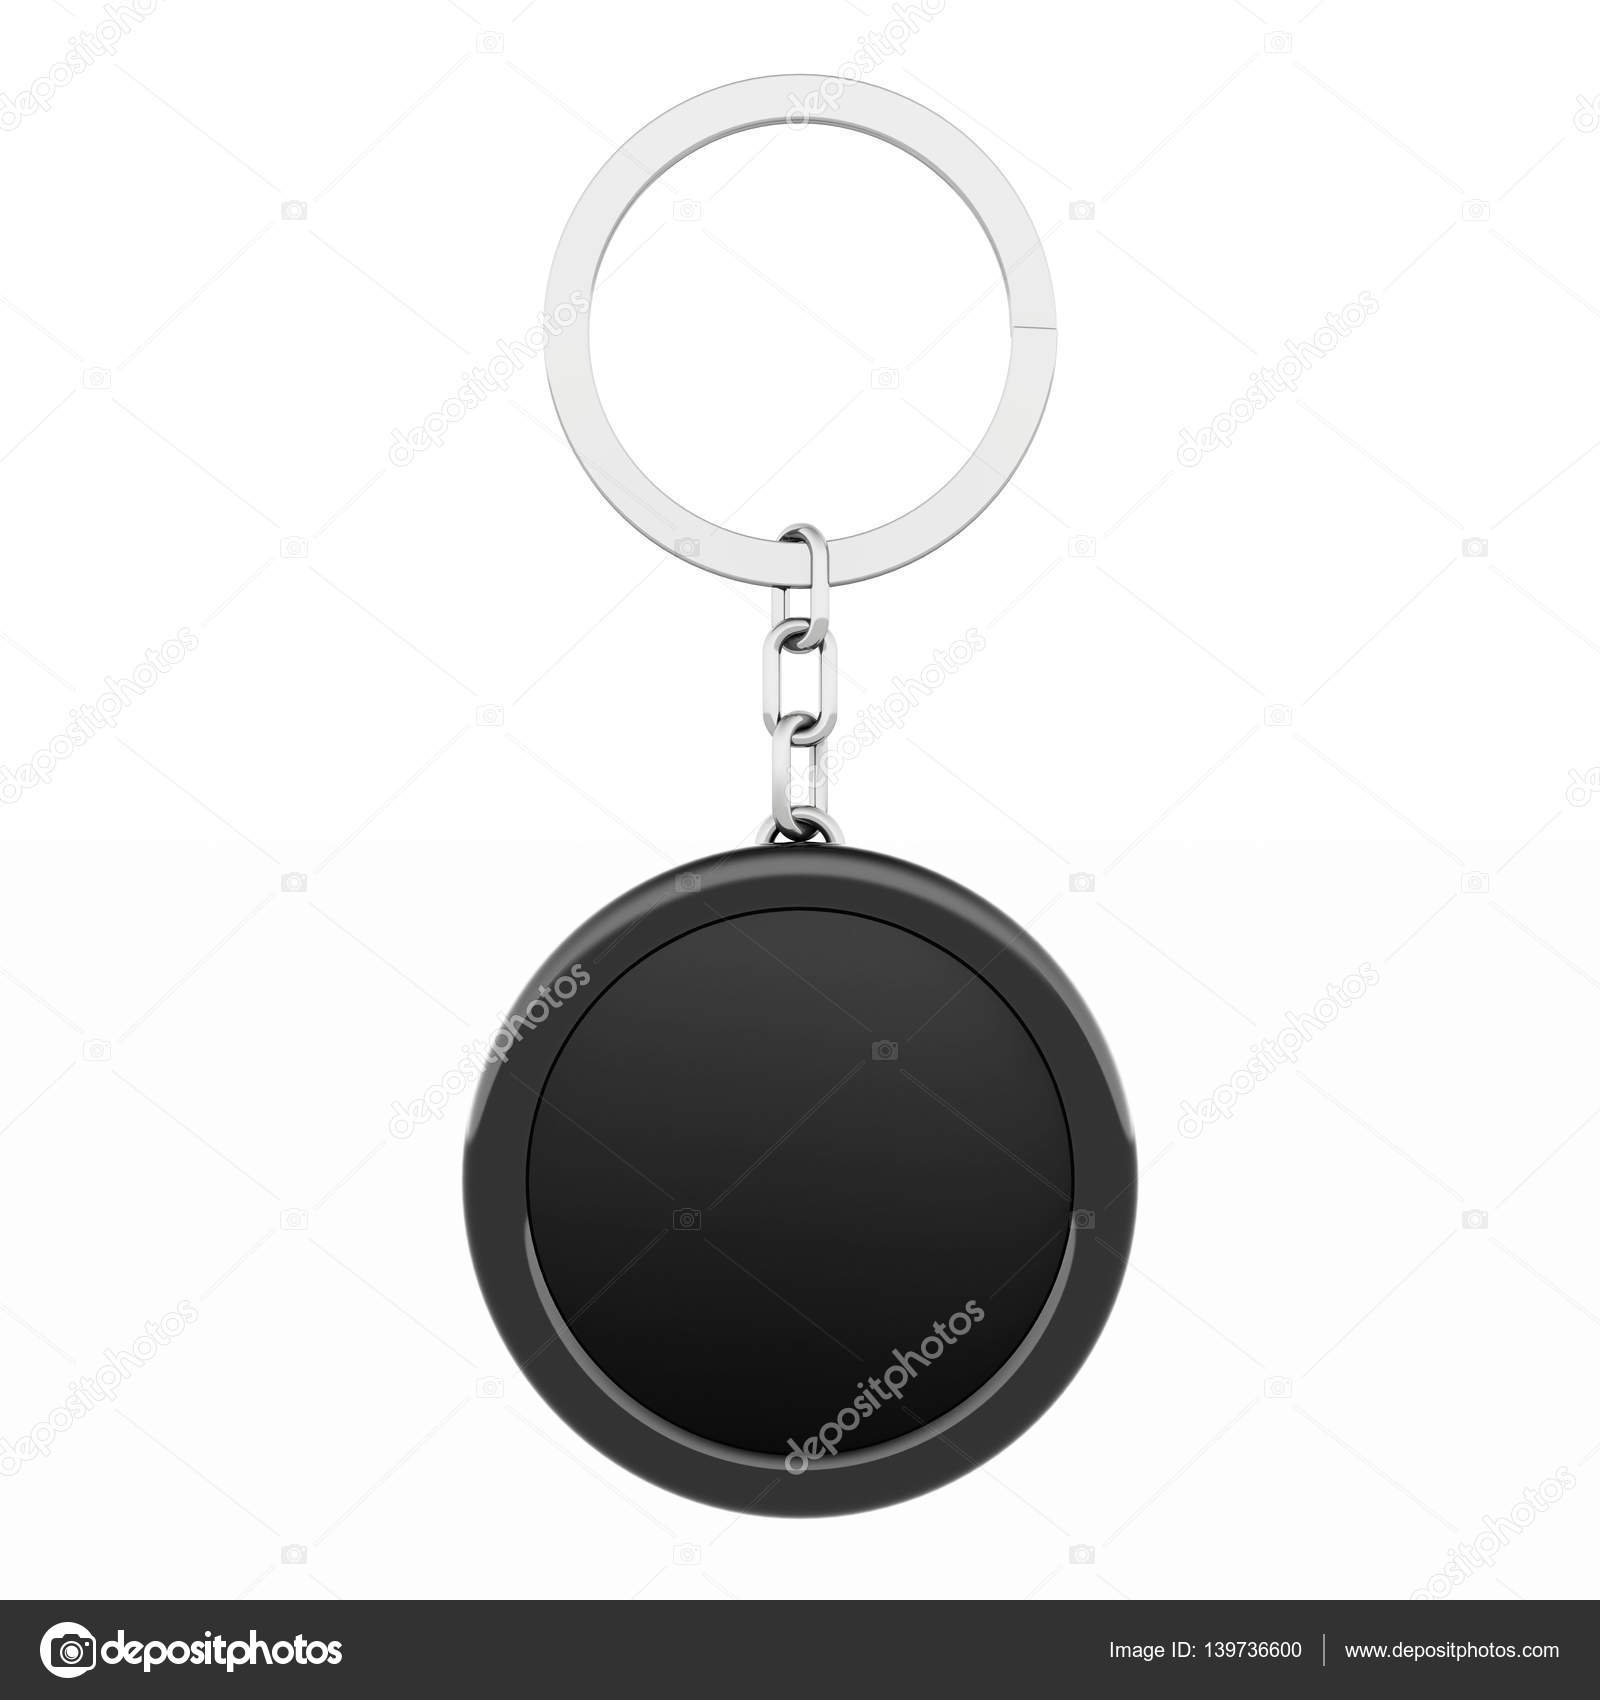 Keytag round key ring, Metal key ring on stock, Metal key ring